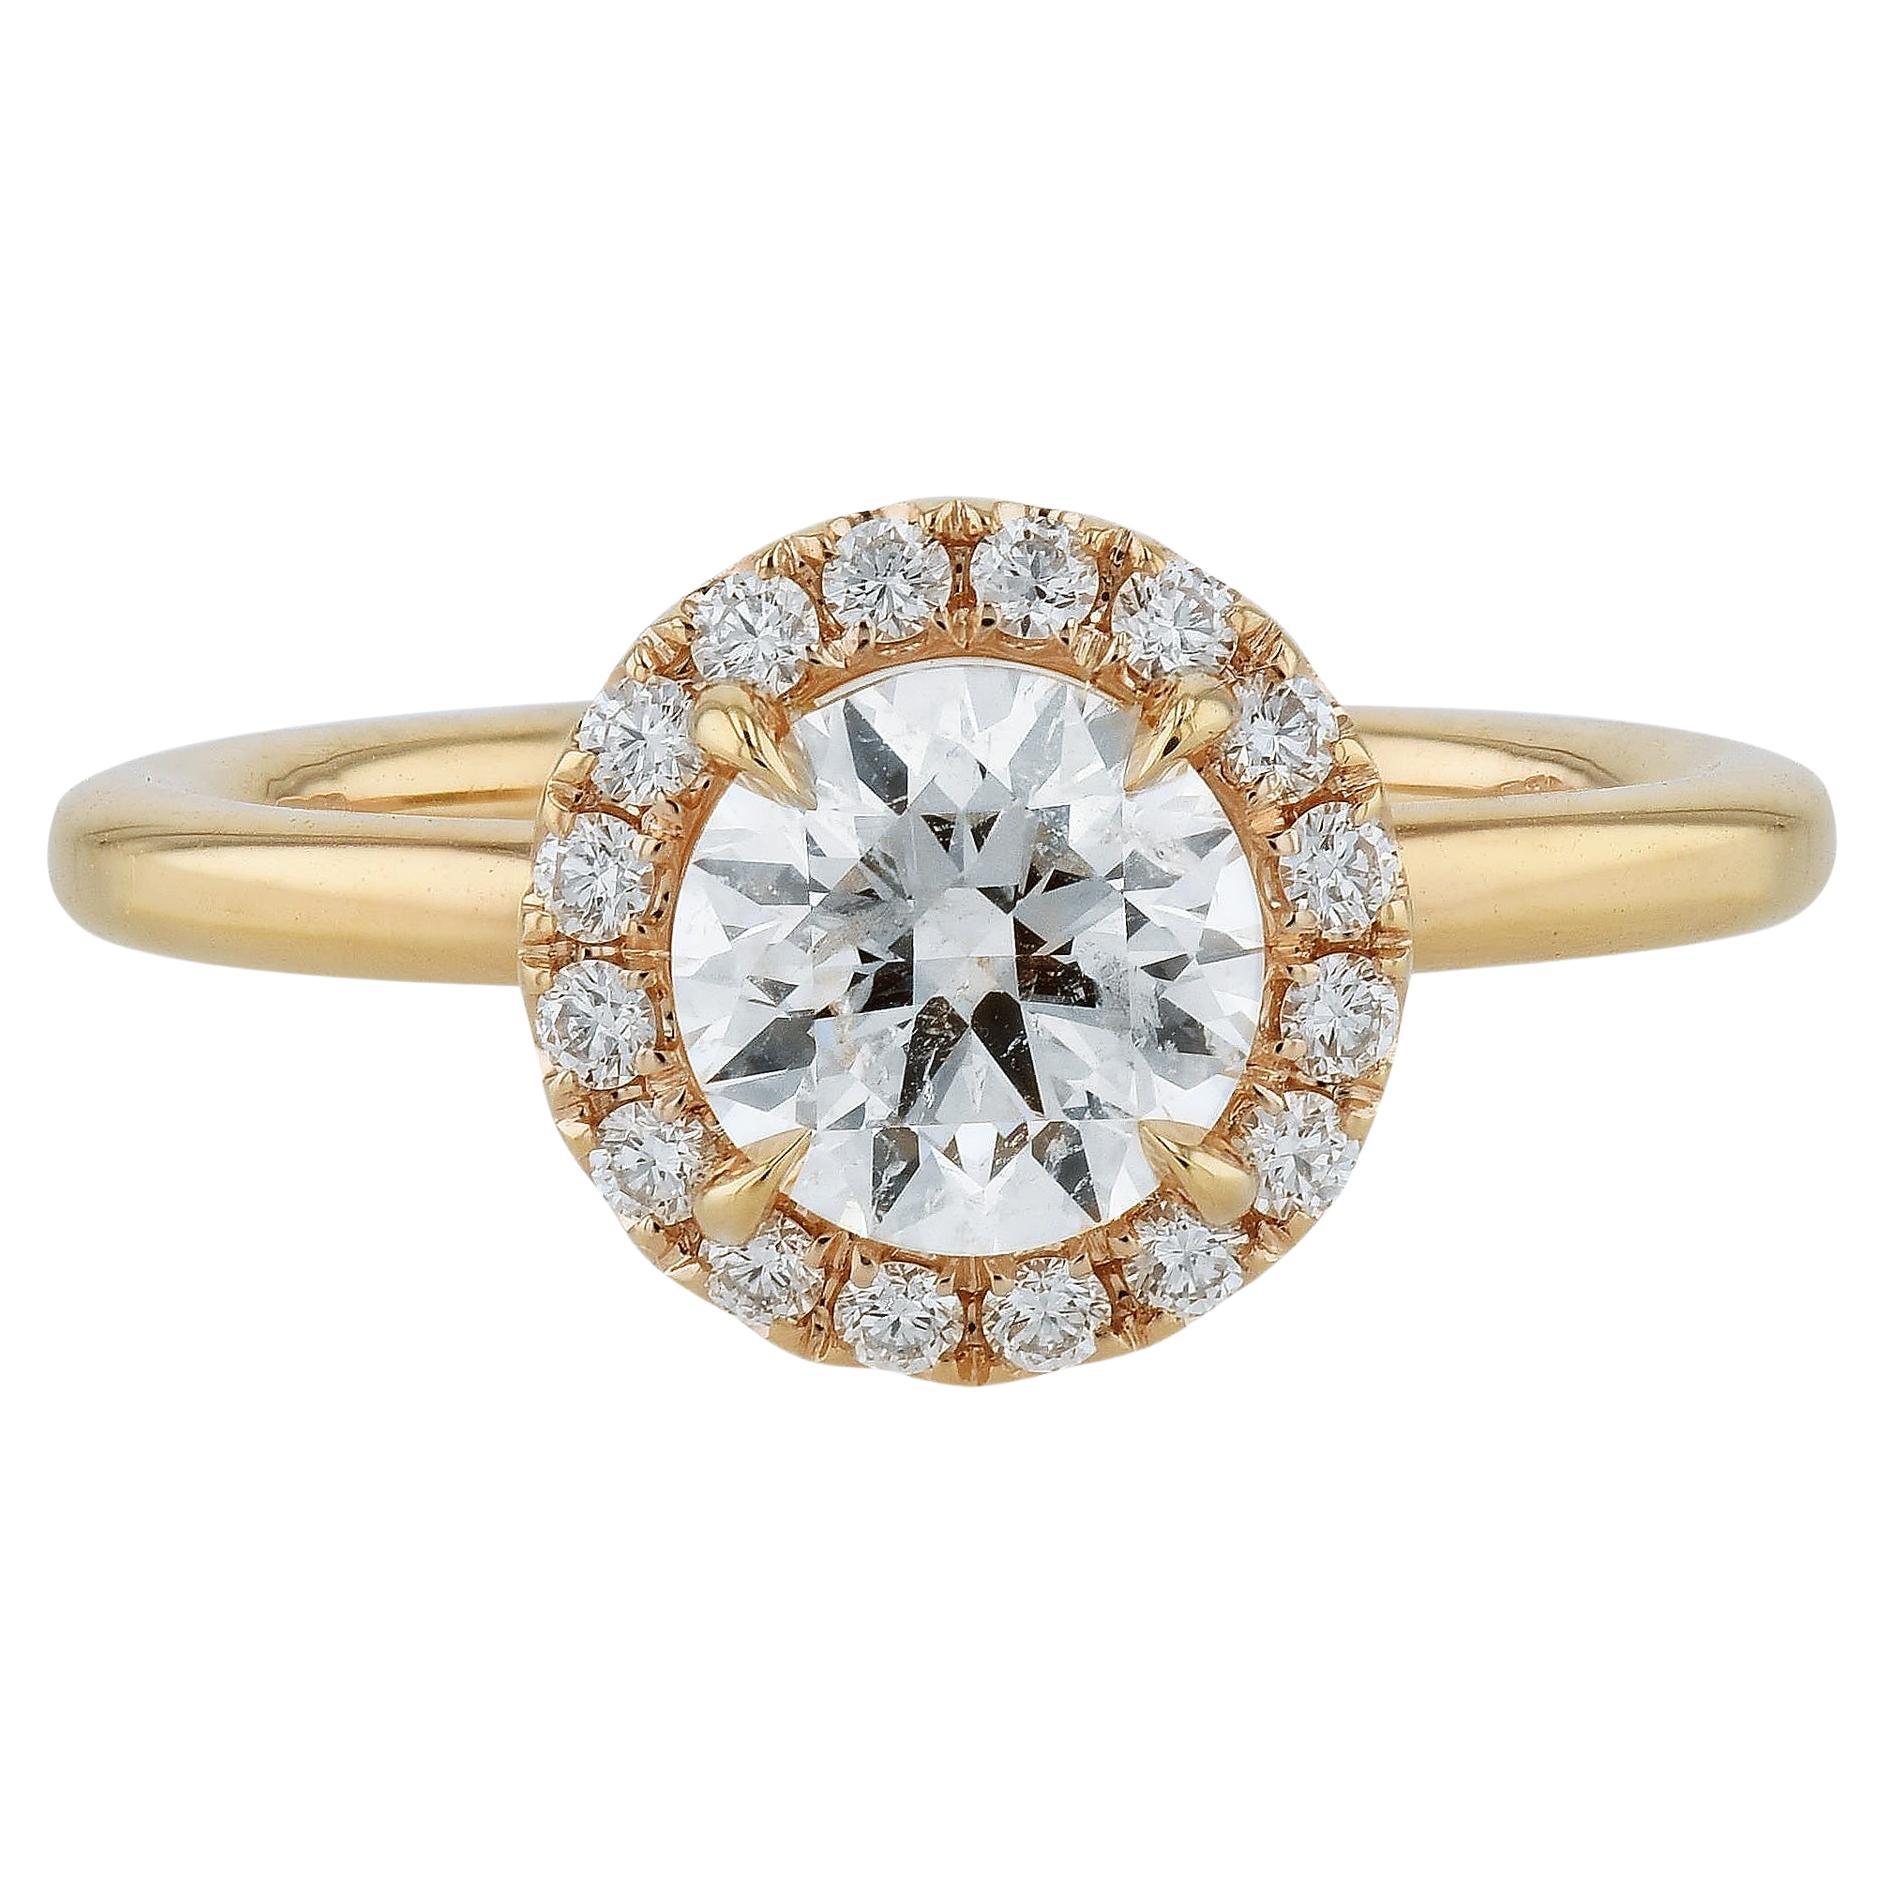 Verlobungsring aus Roségold mit GIA-zertifiziertem 1,10 Karat rundem Diamanten im Brillantschliff